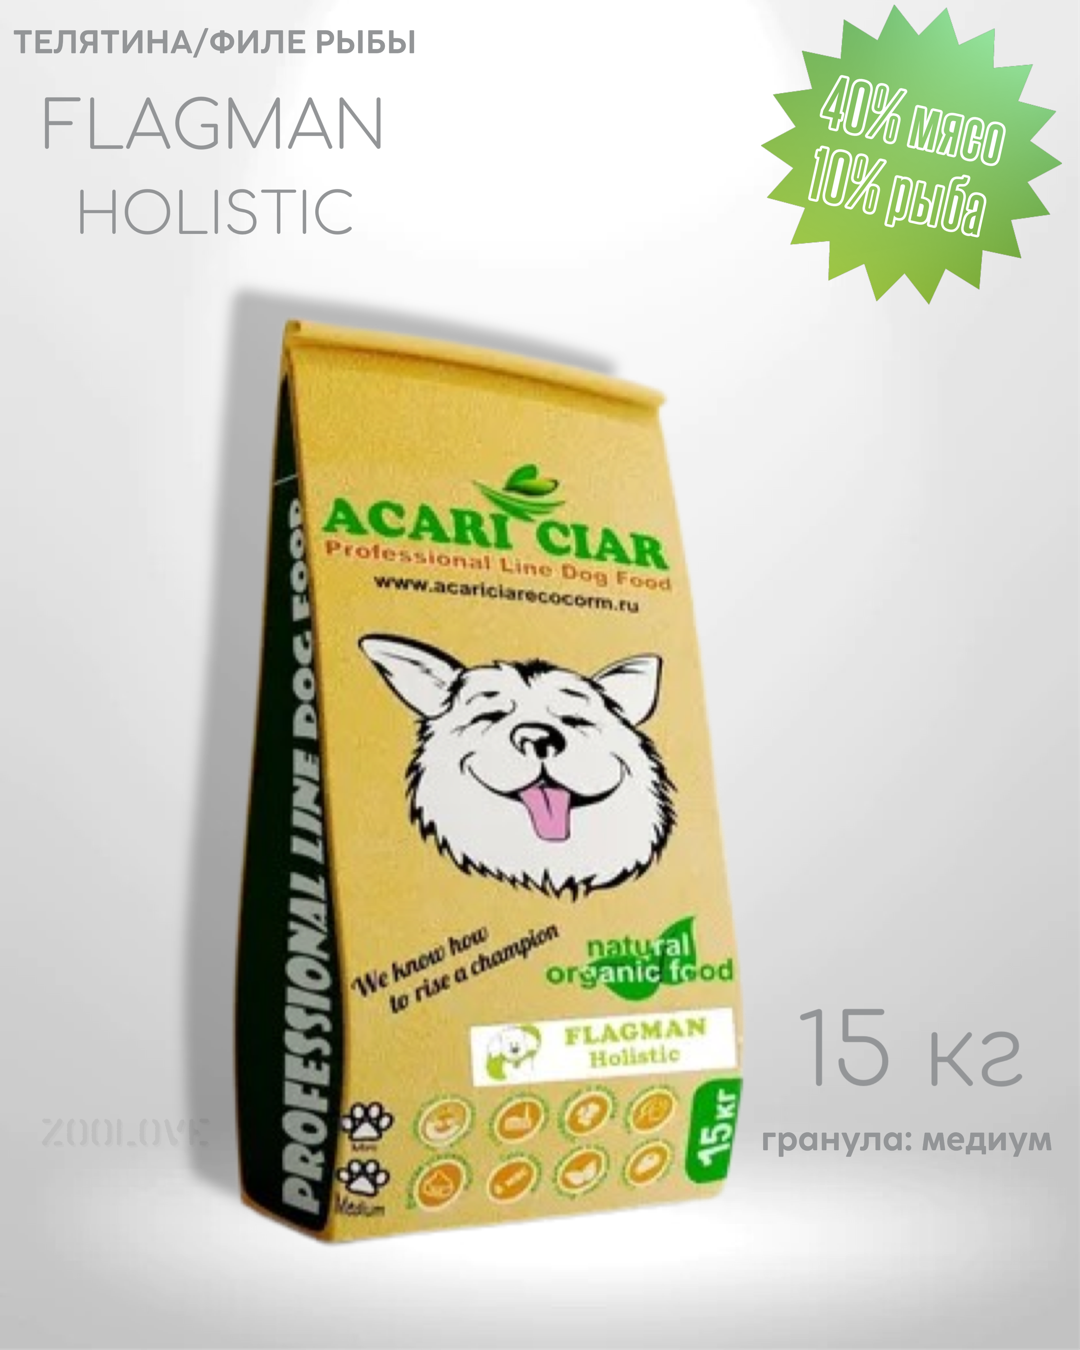 Сухой корм для собак Акари Киар Флагман / Acari Ciar Flagman (медиум гранула) 5 кг